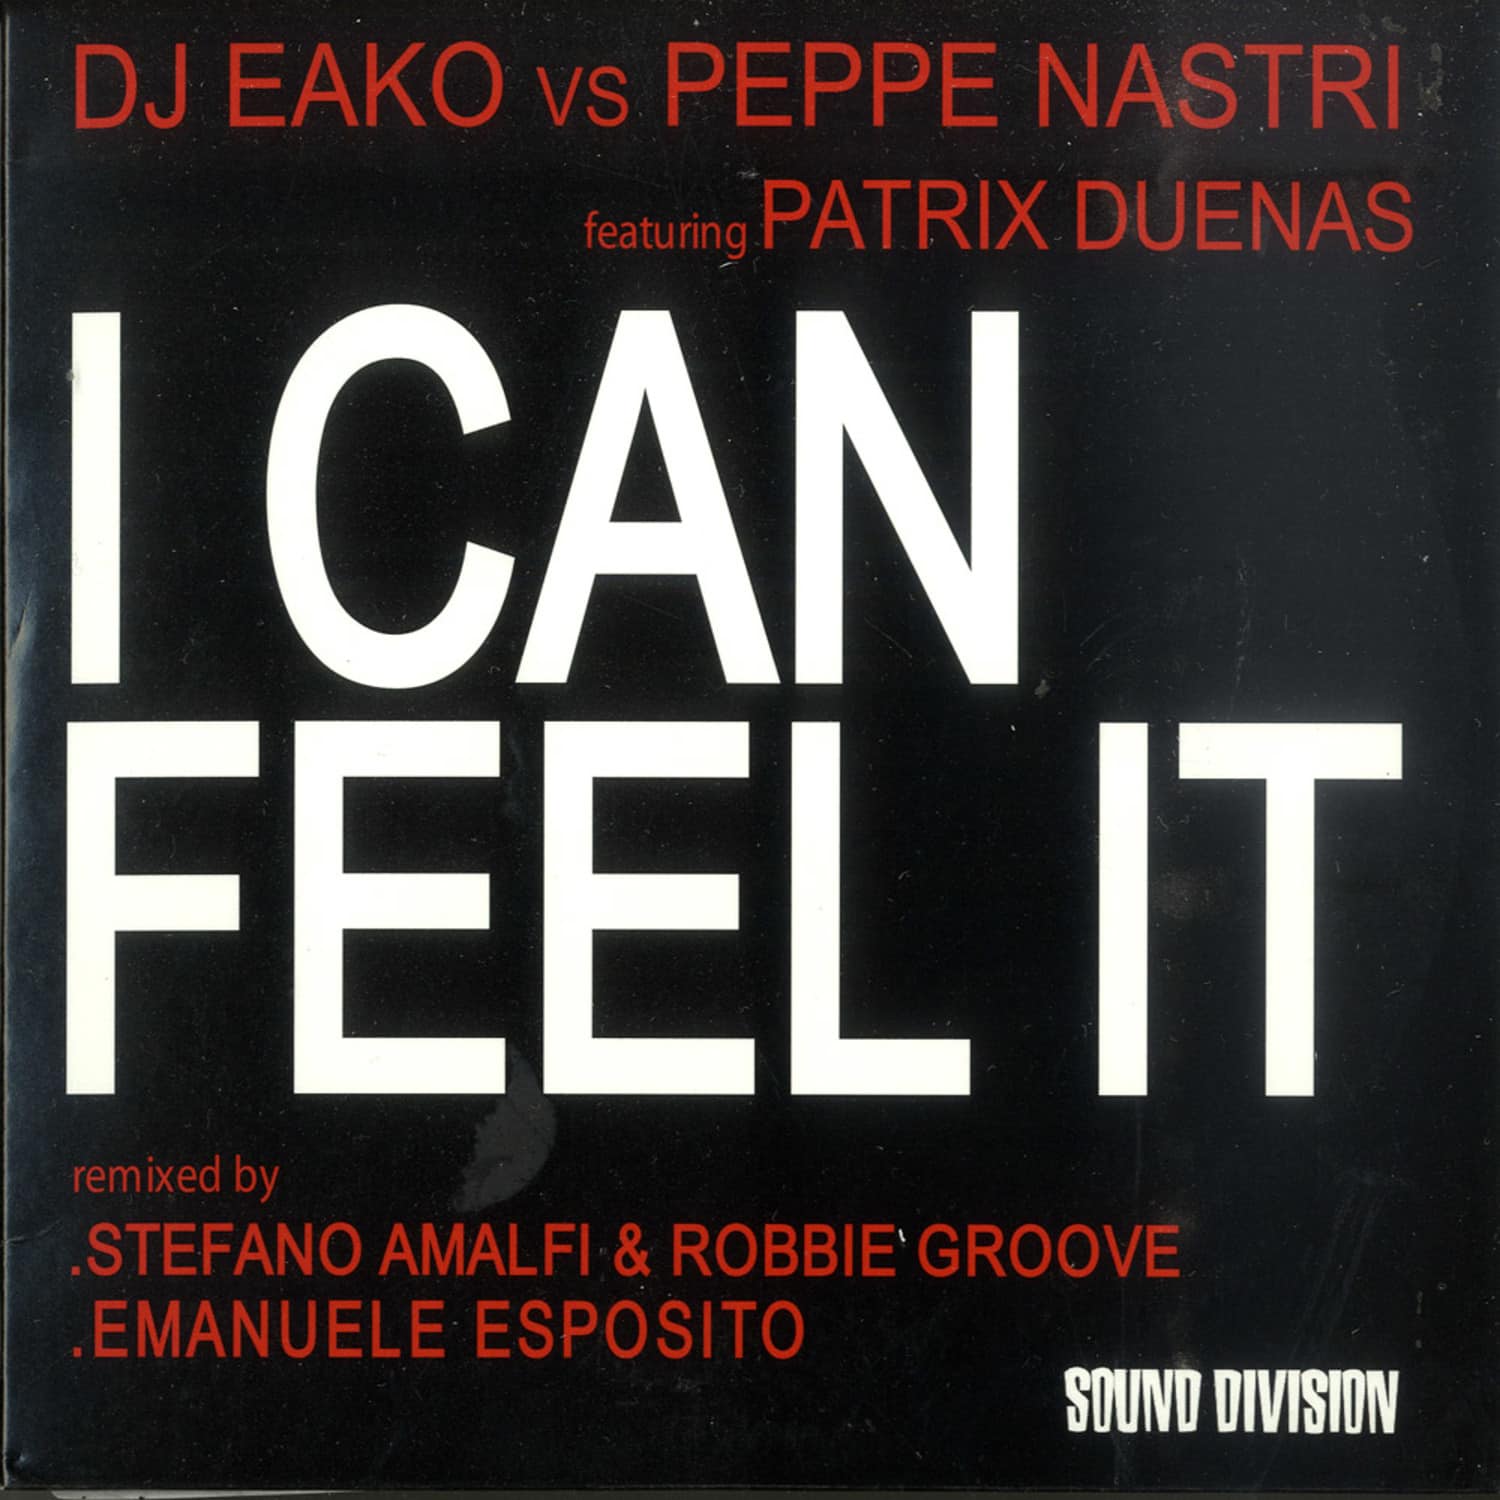 DJ Eako vs Peppe Nastri feat Patrix Duenas - I CAN FEEL IT 